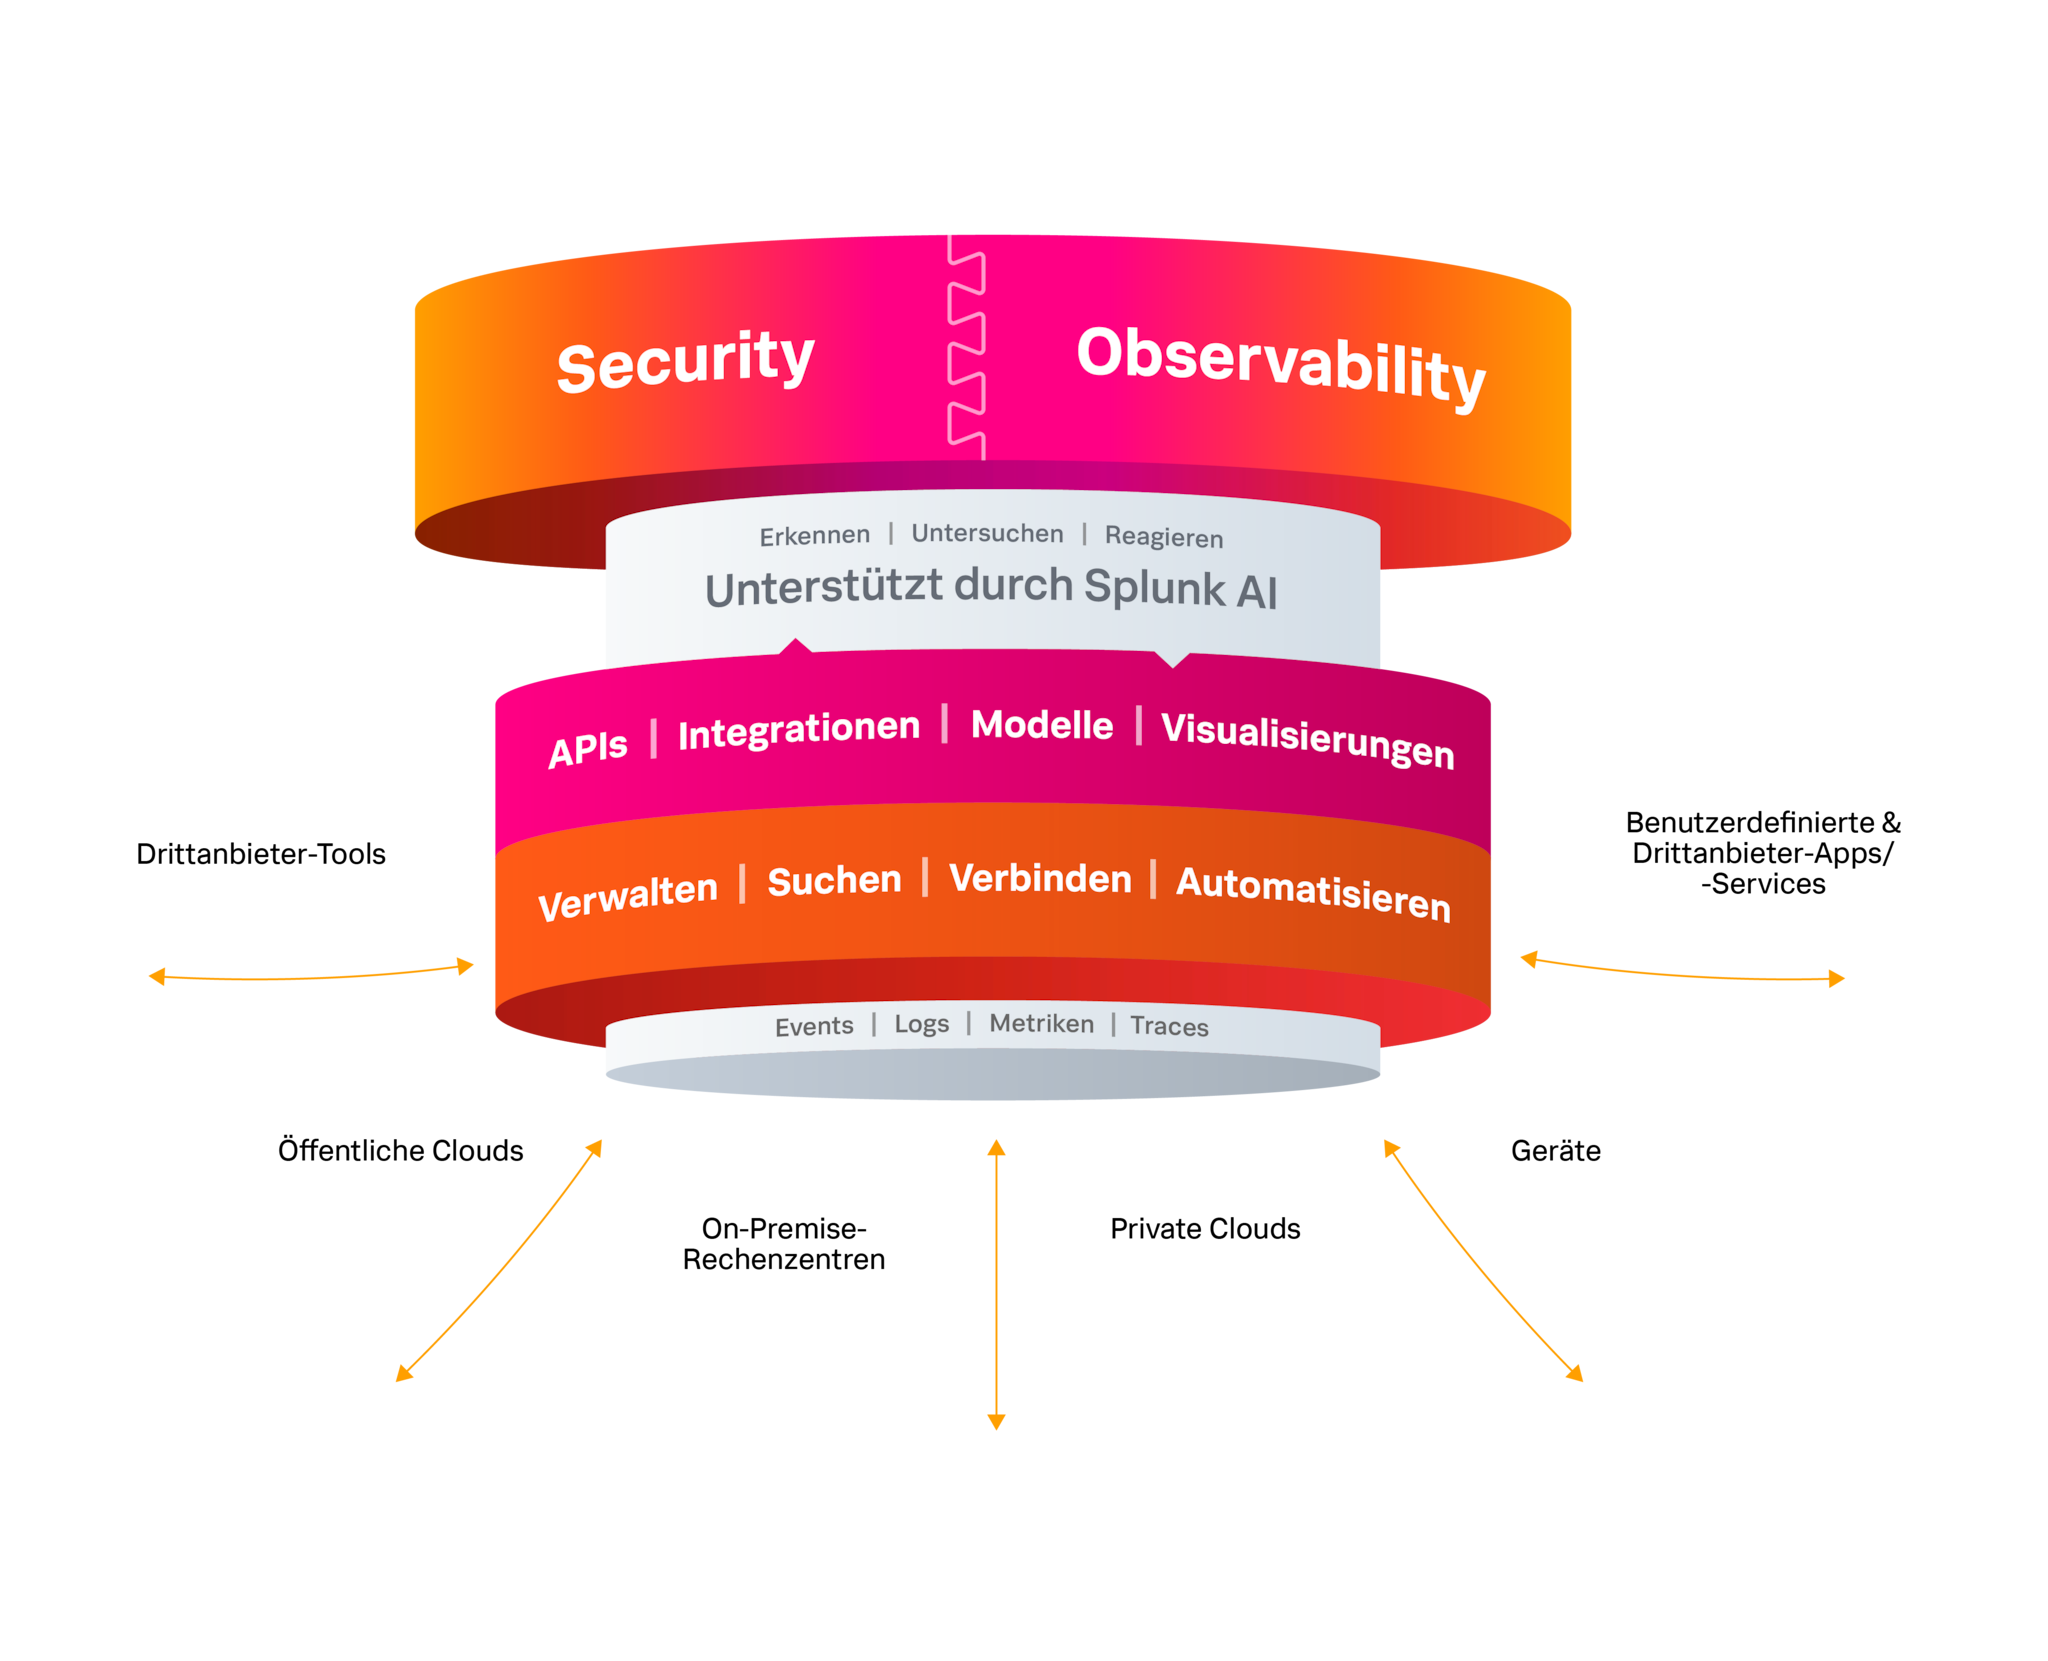 Splunk bietet einheitliche Security- und Observability-Lösungen auf einer einheitlichen Plattform, unterstützt durch Splunk AI